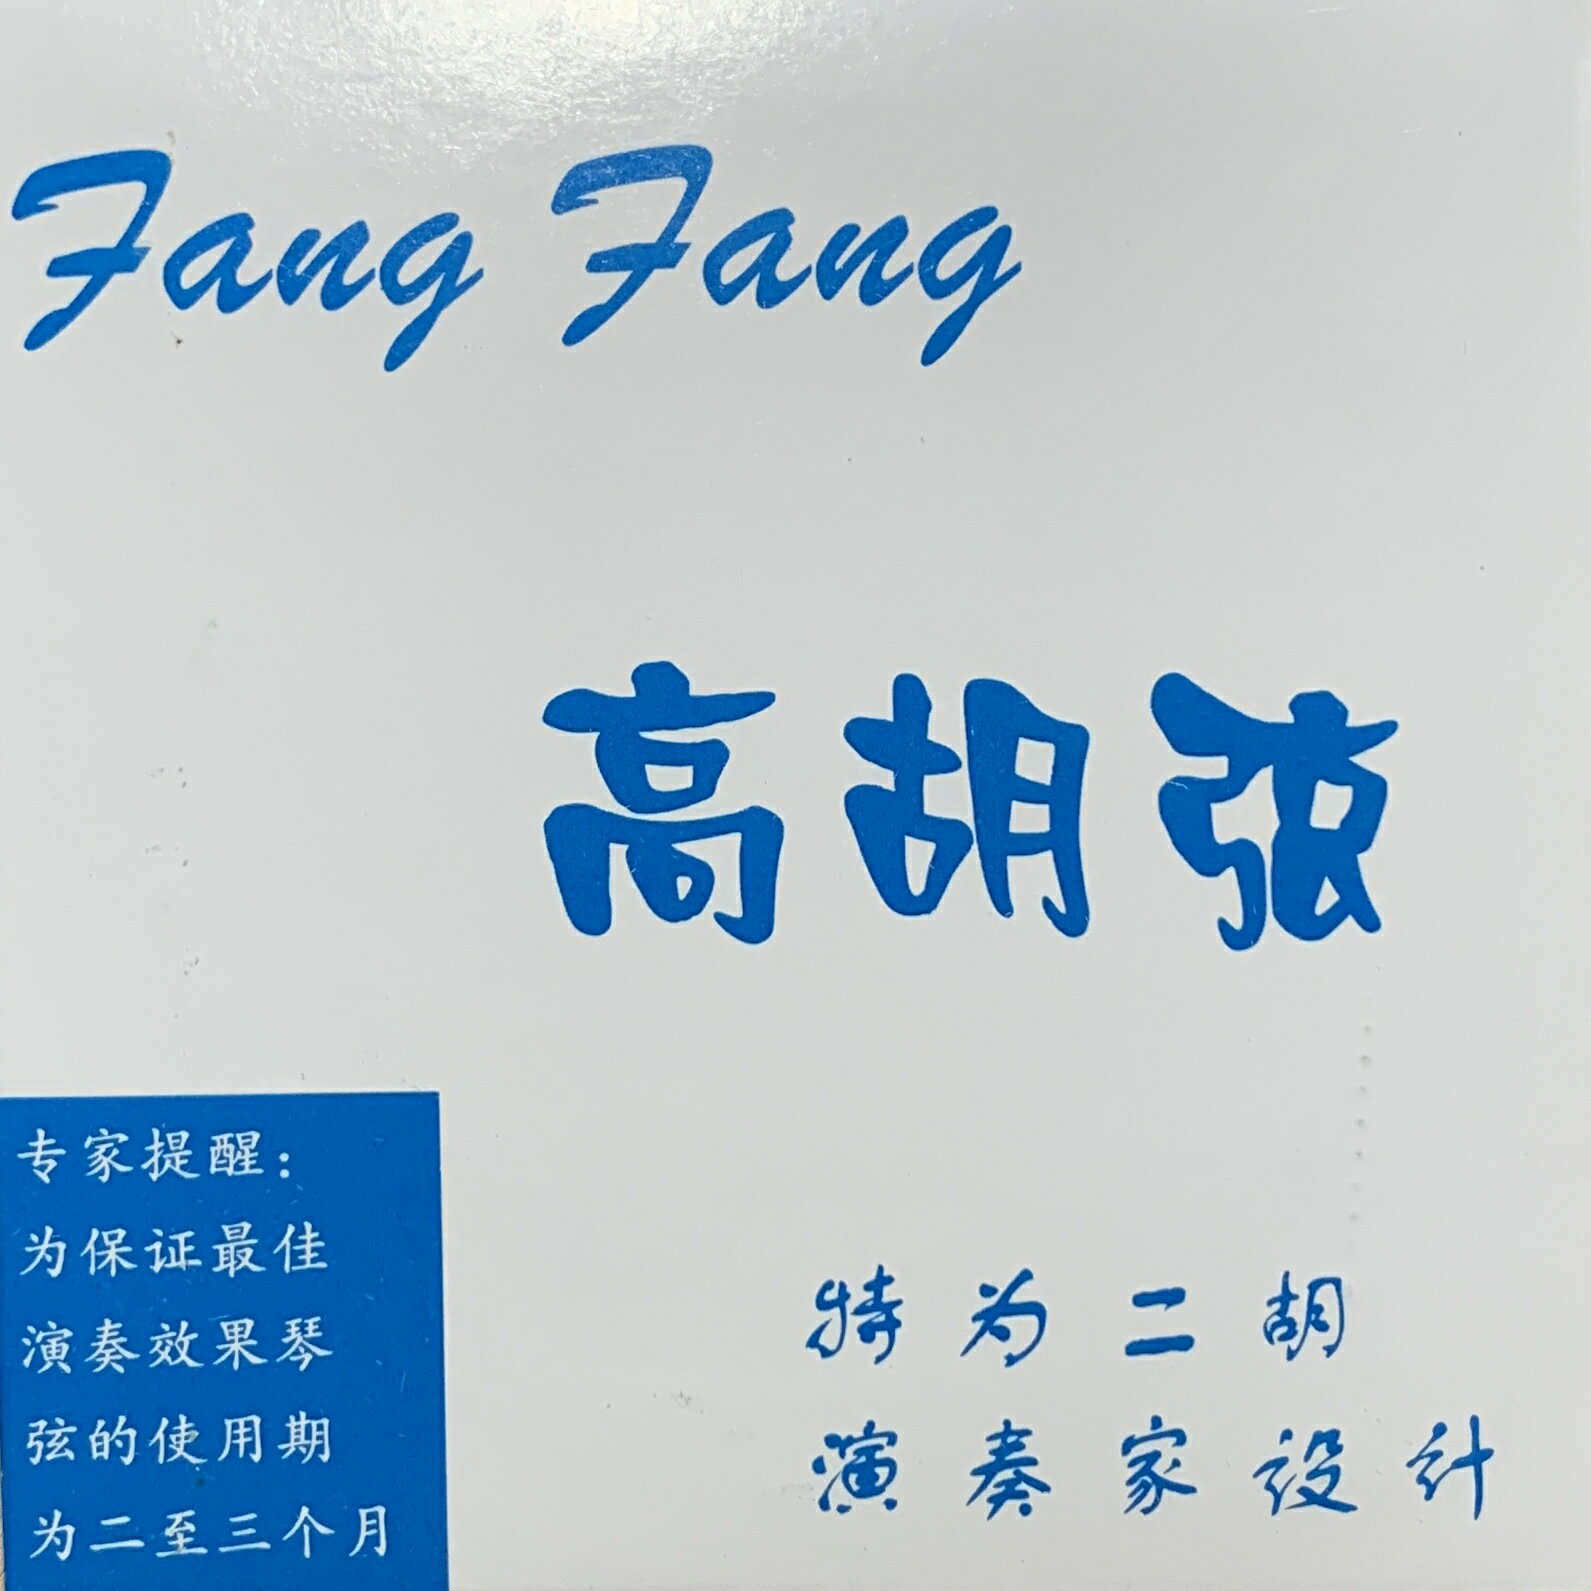 高胡弦 FangFang 青（演奏家設計）